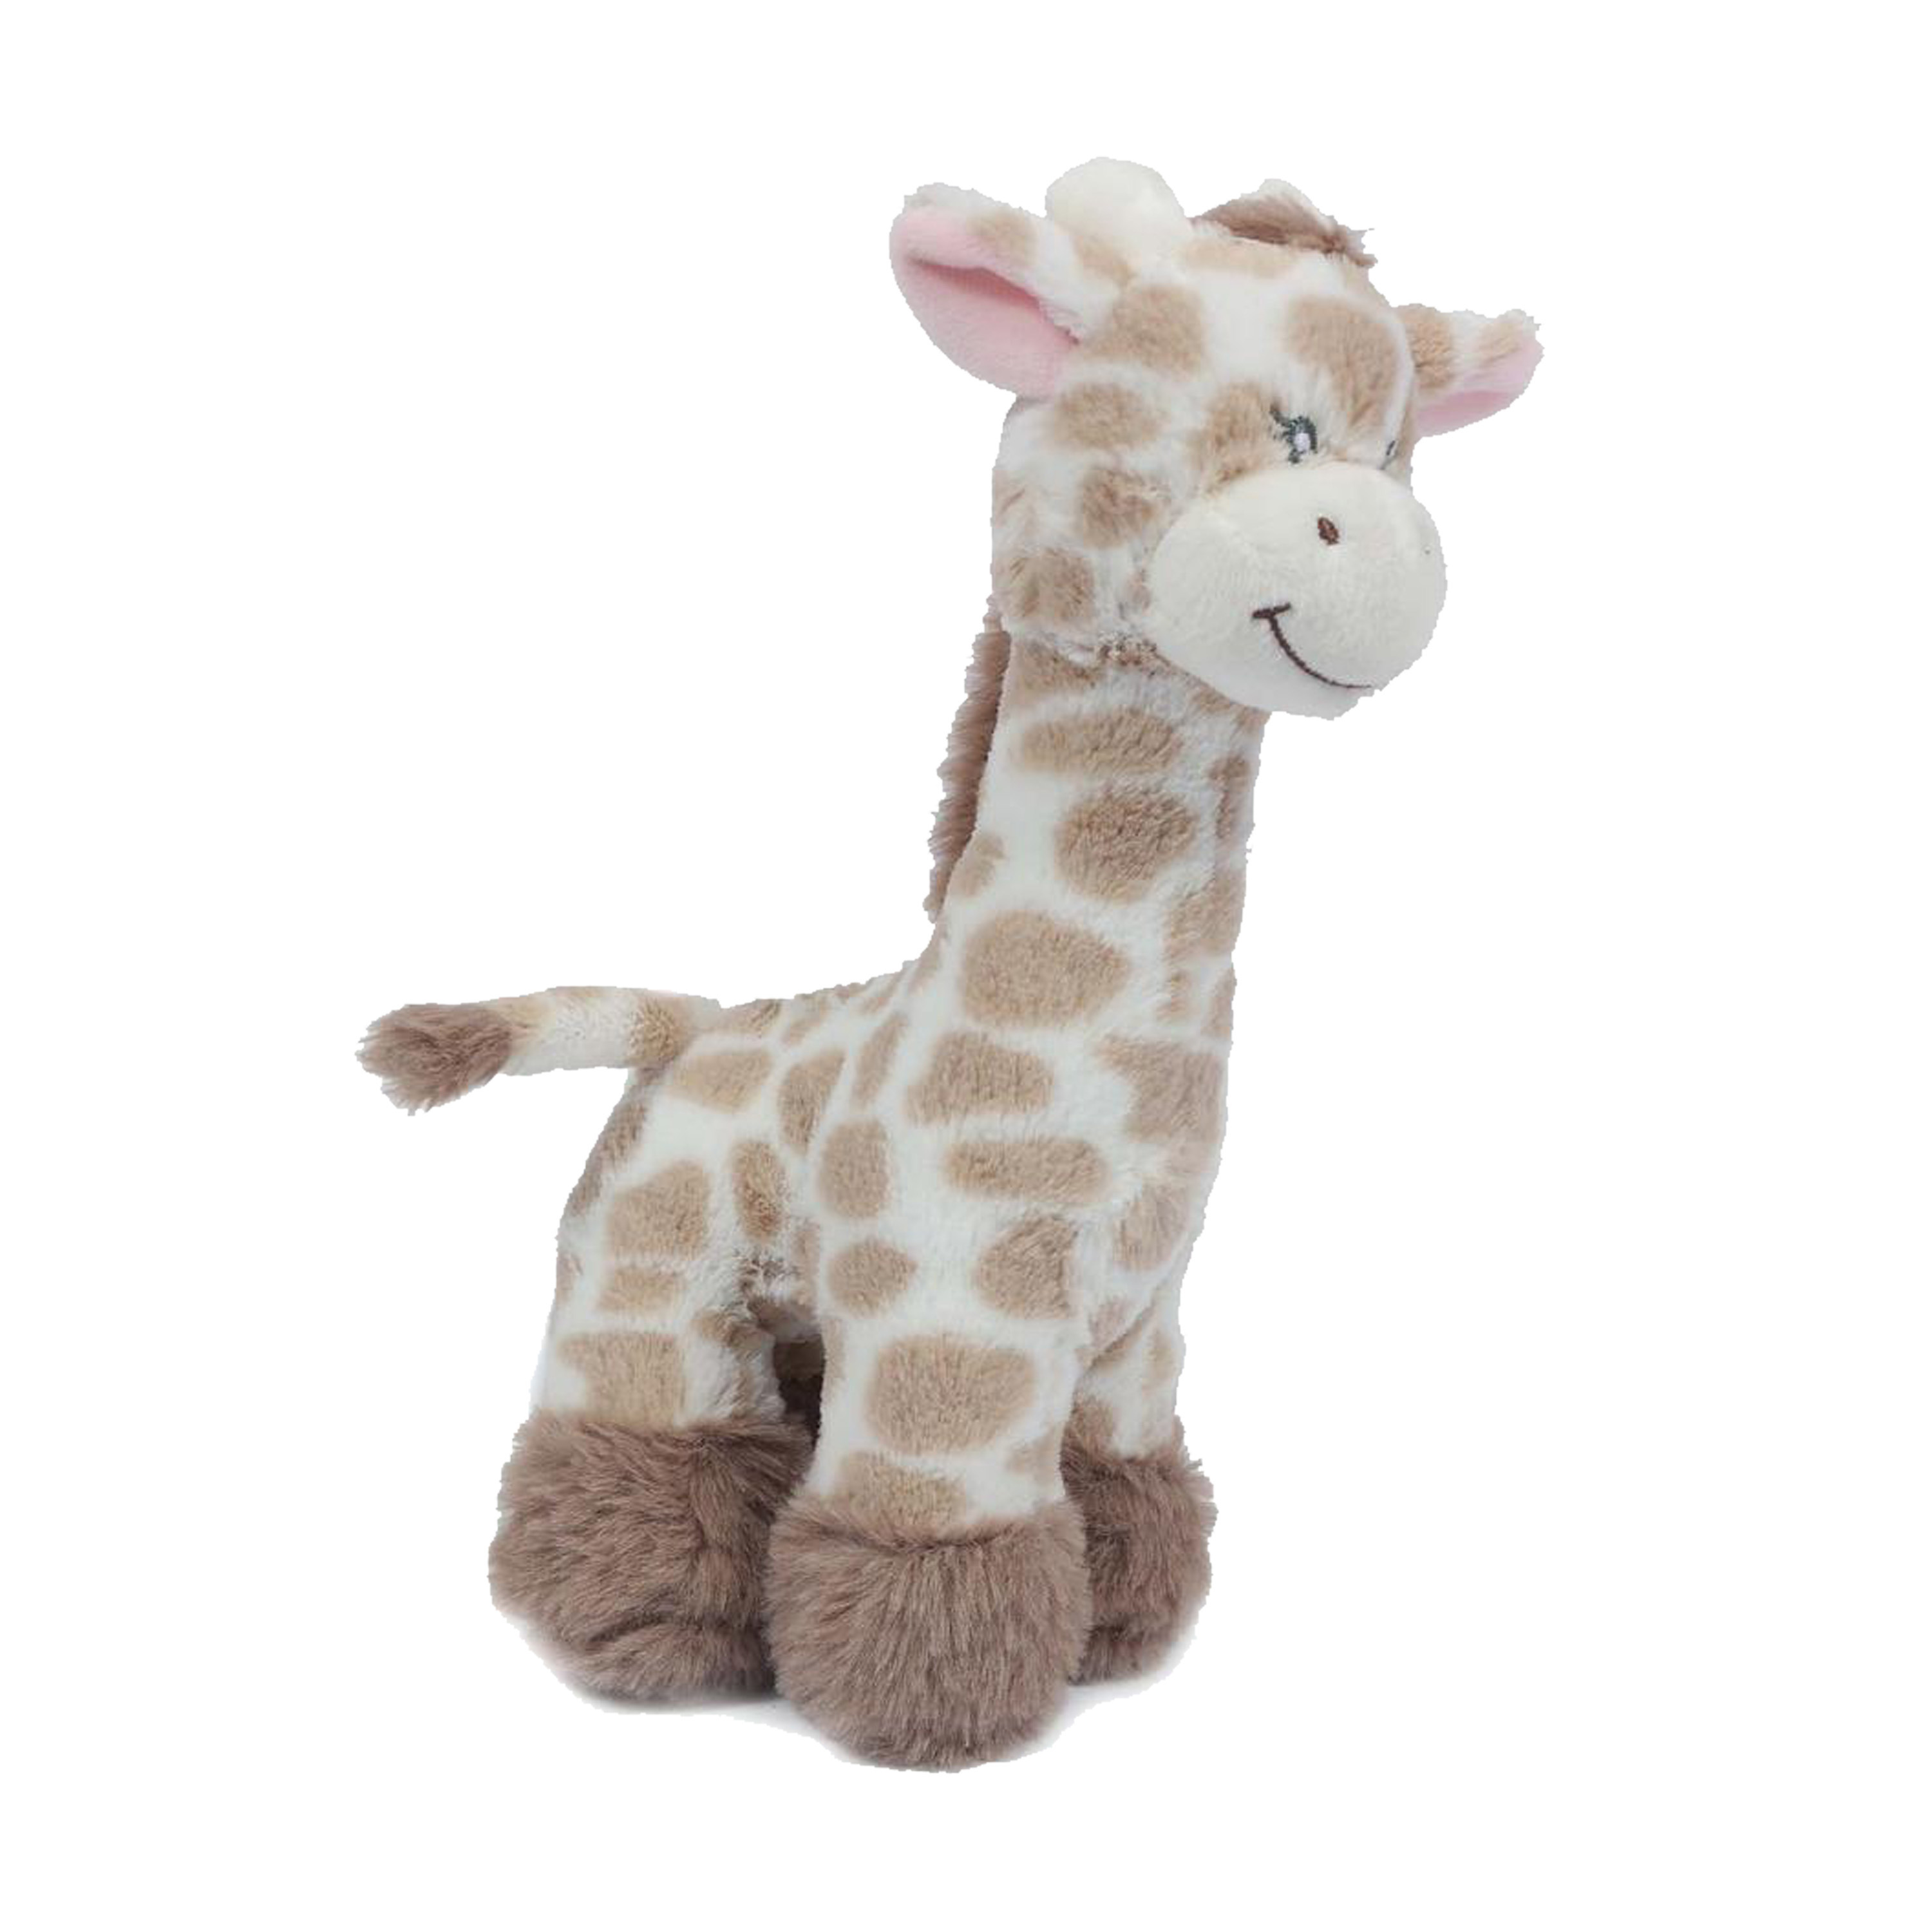 Knuffeldier Giraffe - zachte pluche stof - lichtbruin - kwaliteit knuffels - 28 cm - liggend -